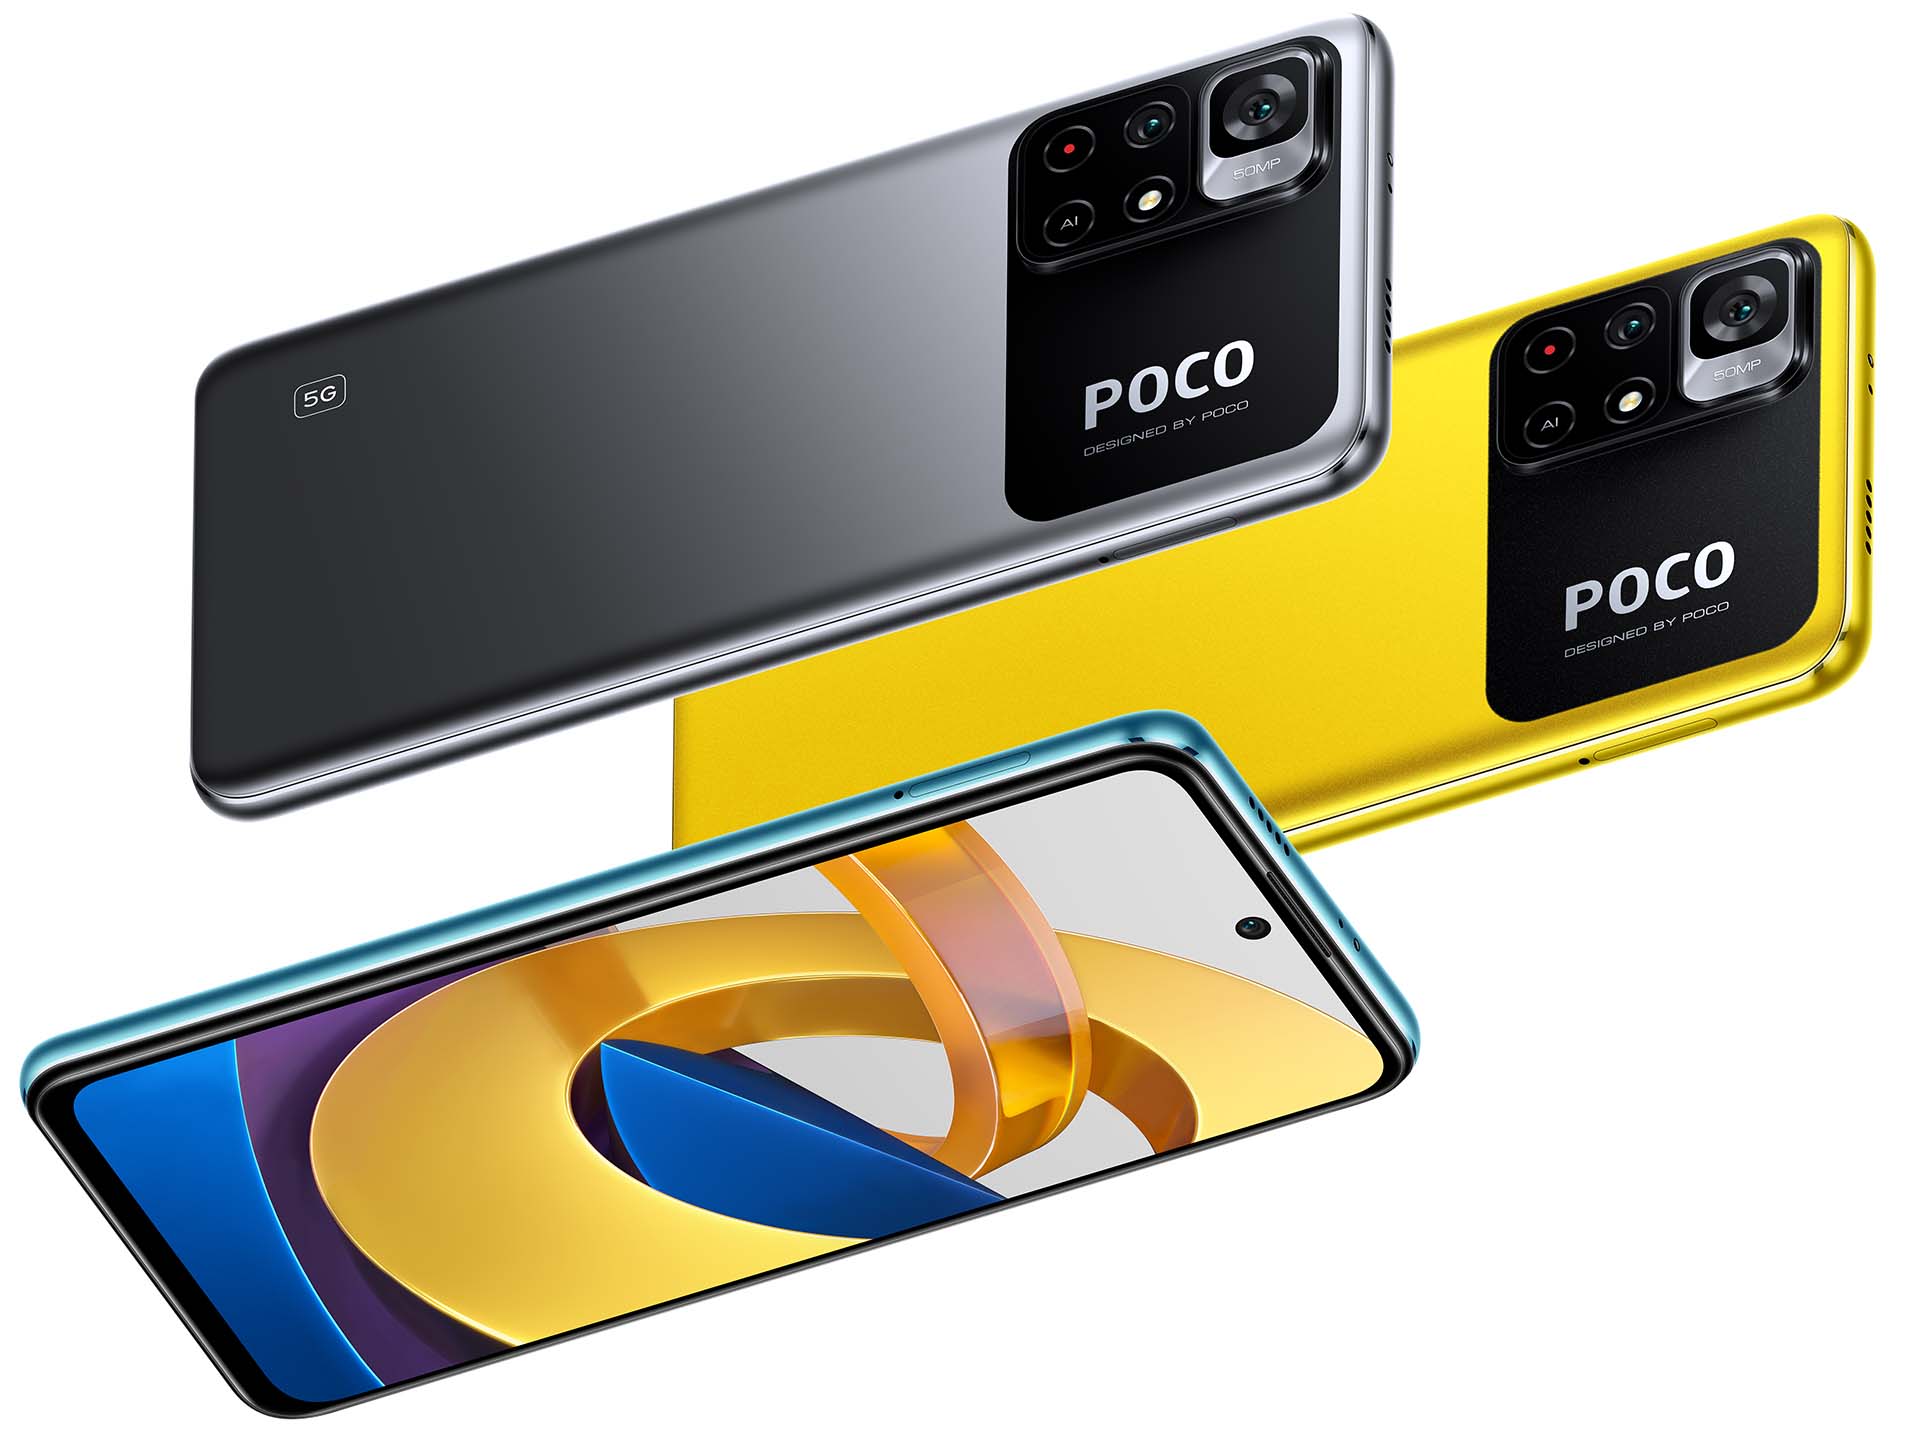 Xiaomi Poco M4 Pro 5G - Đánh giá bên ngoài trên Notebookcheck.net: Khám phá đánh giá bên ngoài cho chiếc điện thoại Xiaomi Poco M4 Pro 5G trên Notebookcheck.net. Tham khảo ngay những đánh giá chuyên sâu về thiết kế, hiệu năng và tính năng của sản phẩm để đưa ra quyết định chọn mua thông minh nhất.